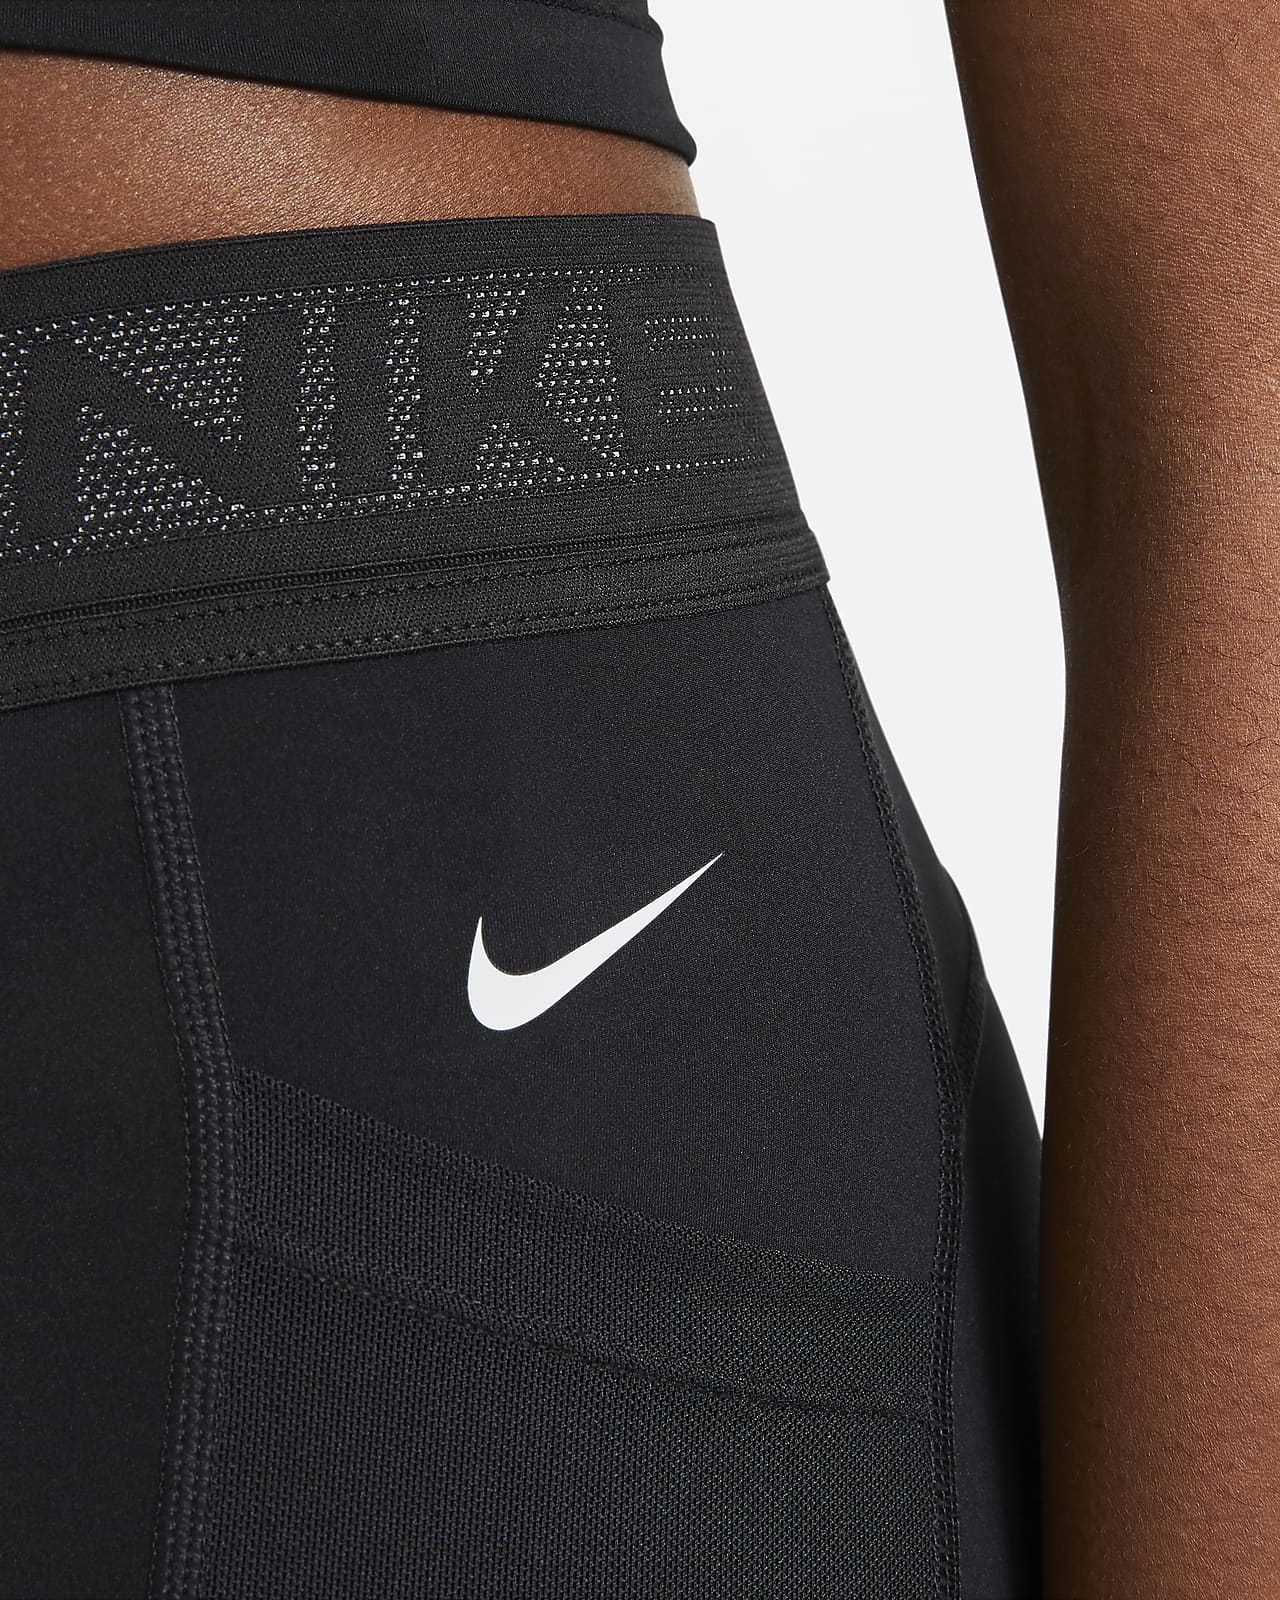 nike pro shorts under sweatpants